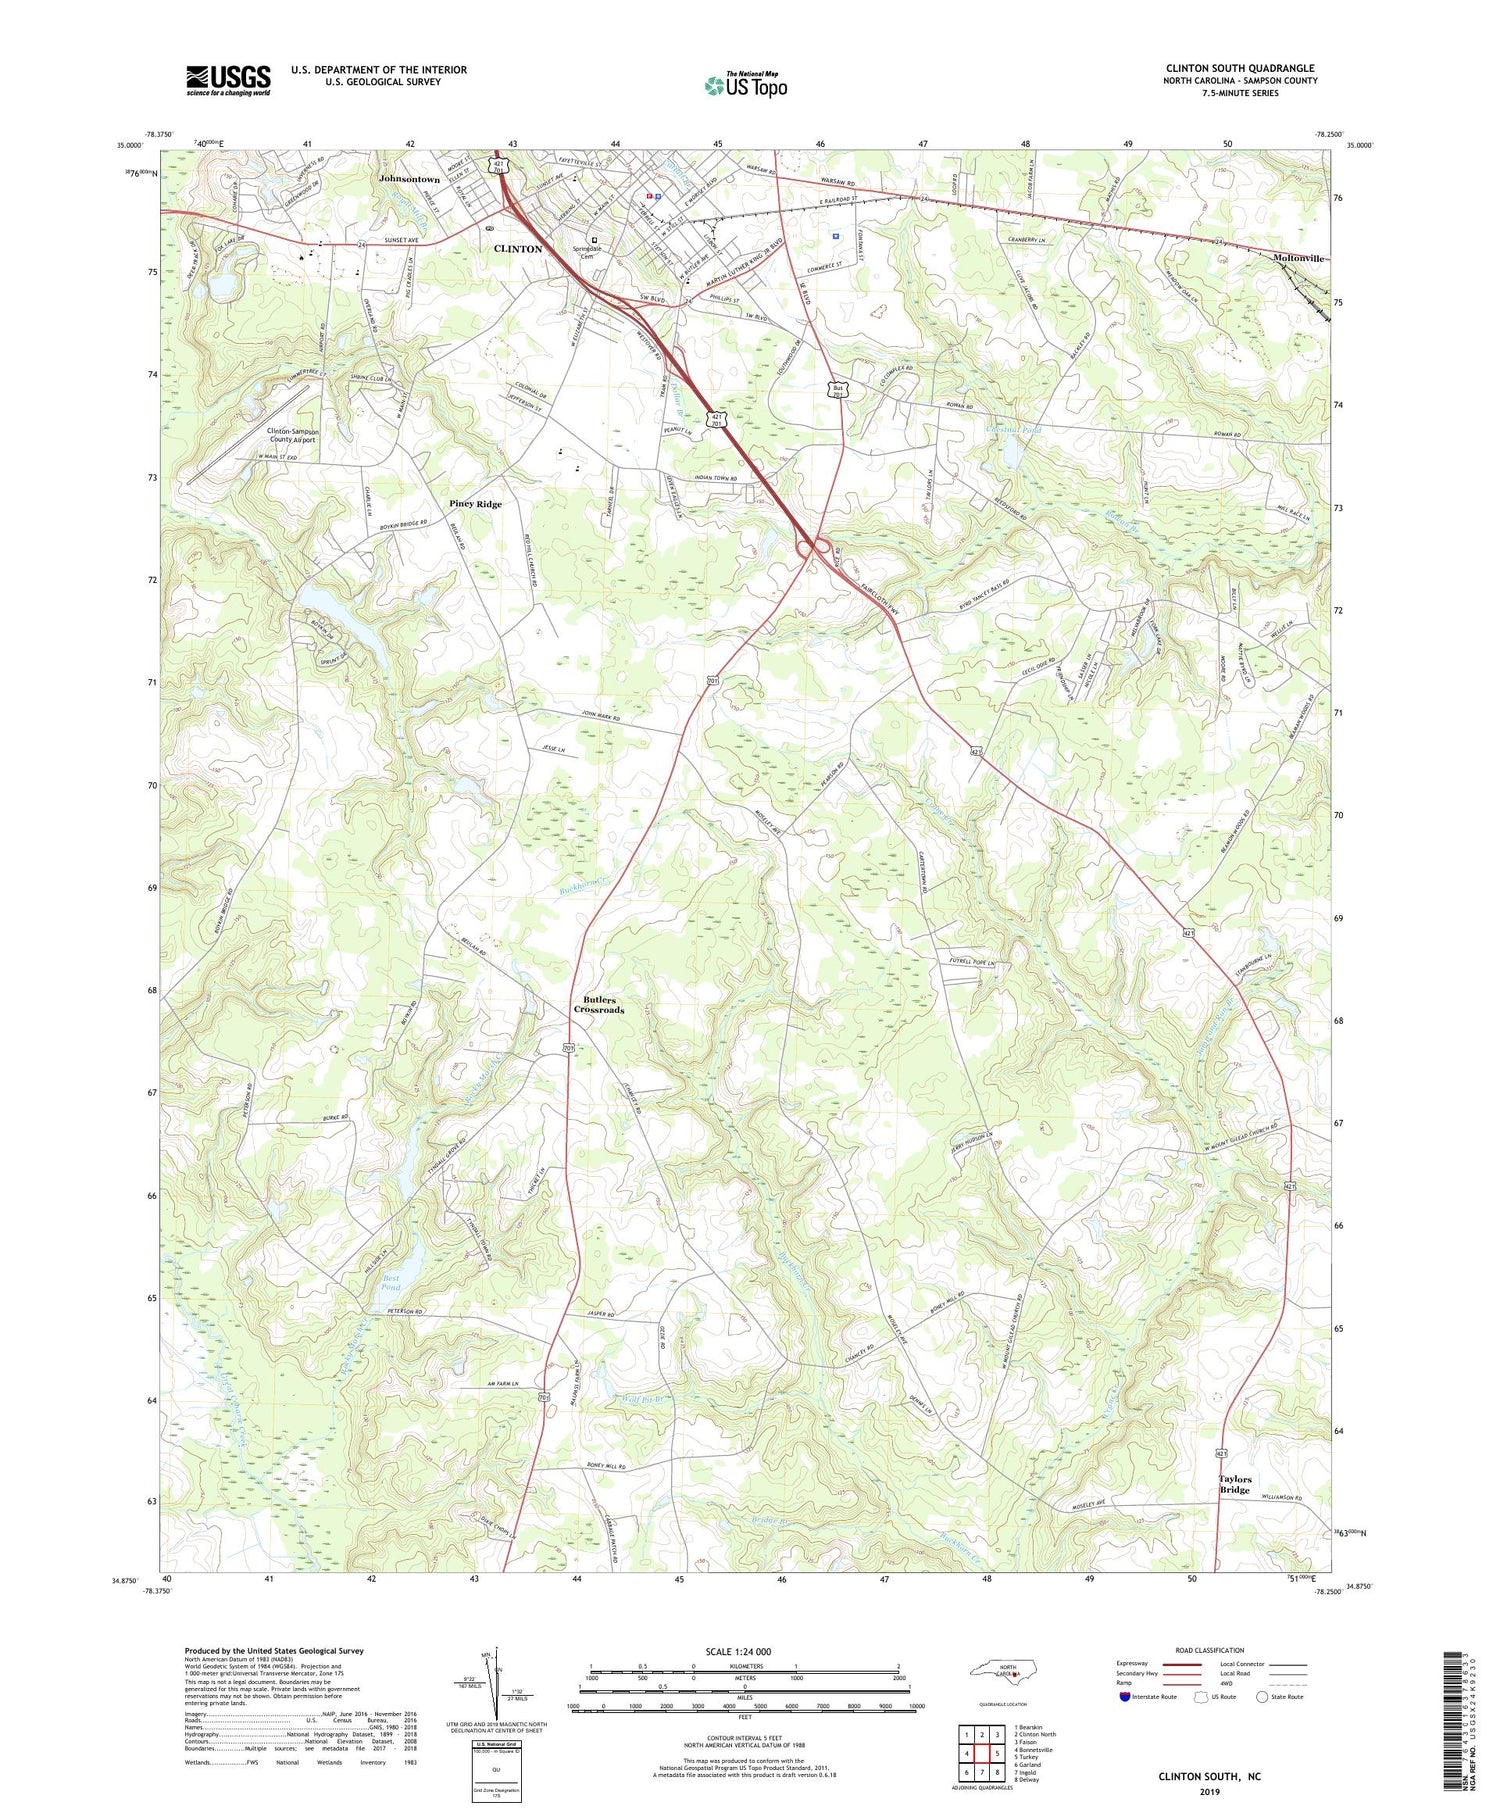 Clinton South North Carolina US Topo Map Image